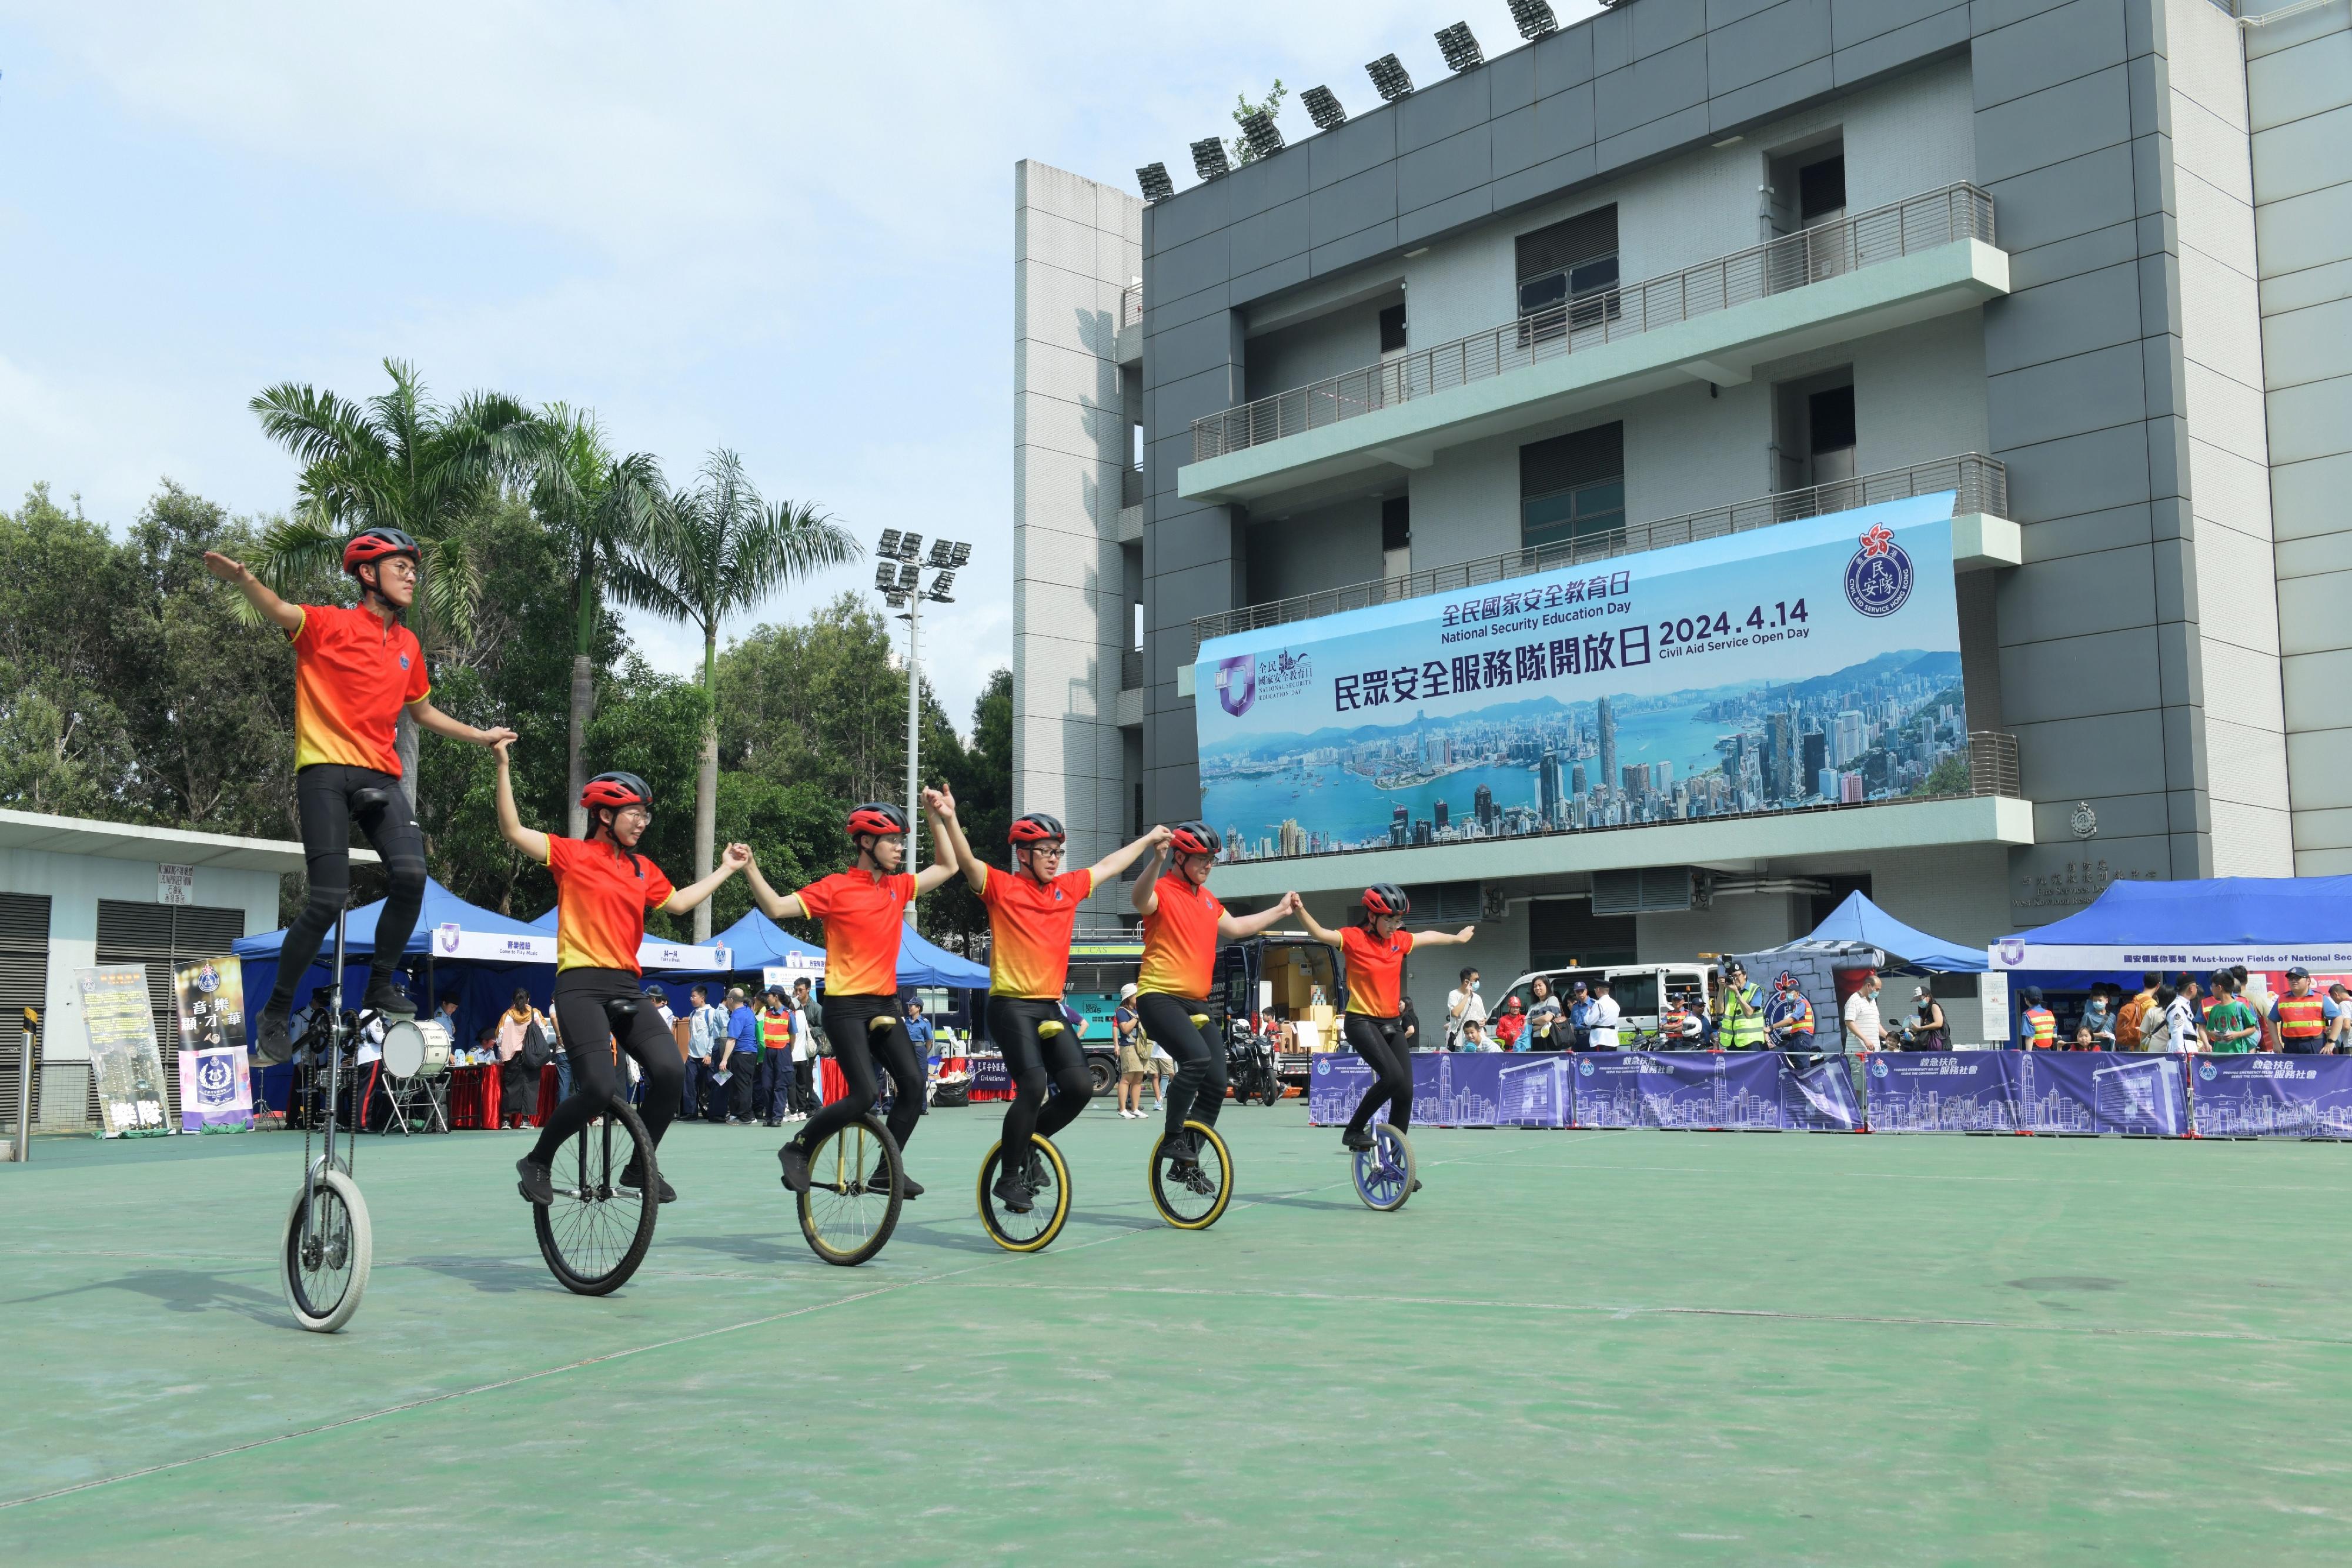 民安隊少年團花式單車表演。